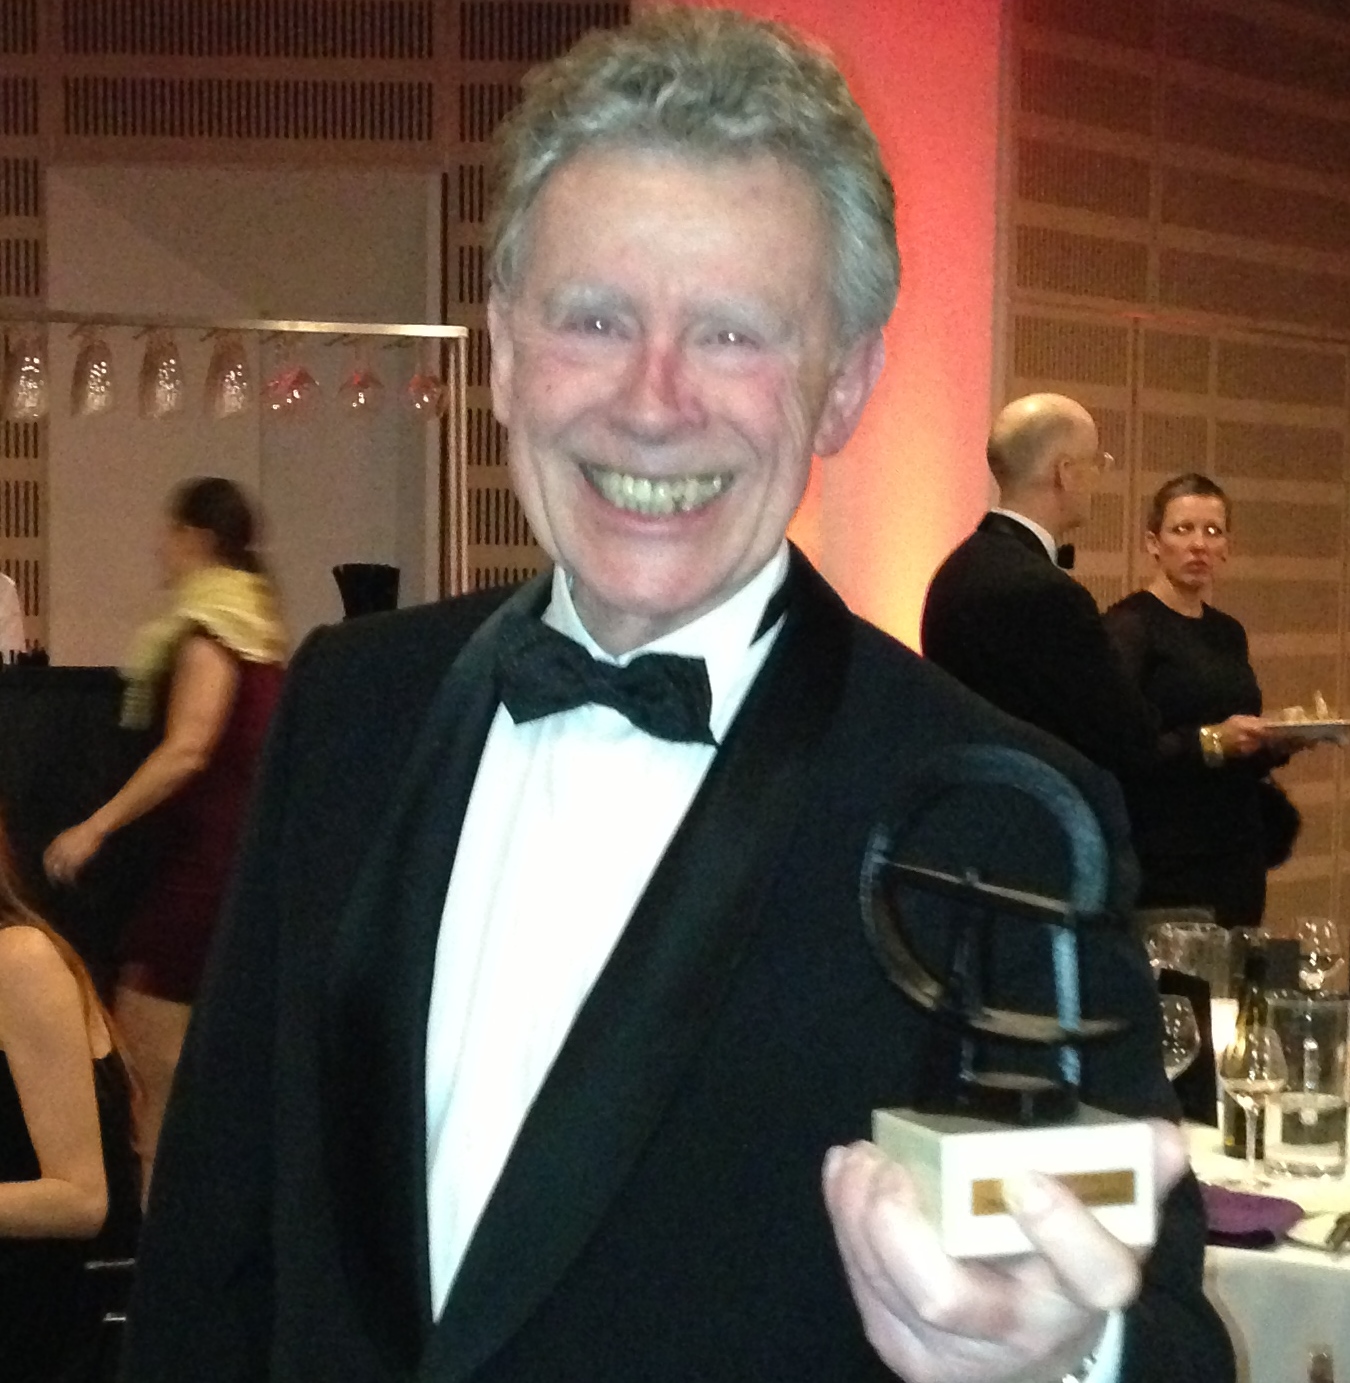 Ole Dupont at Robert Award 2014